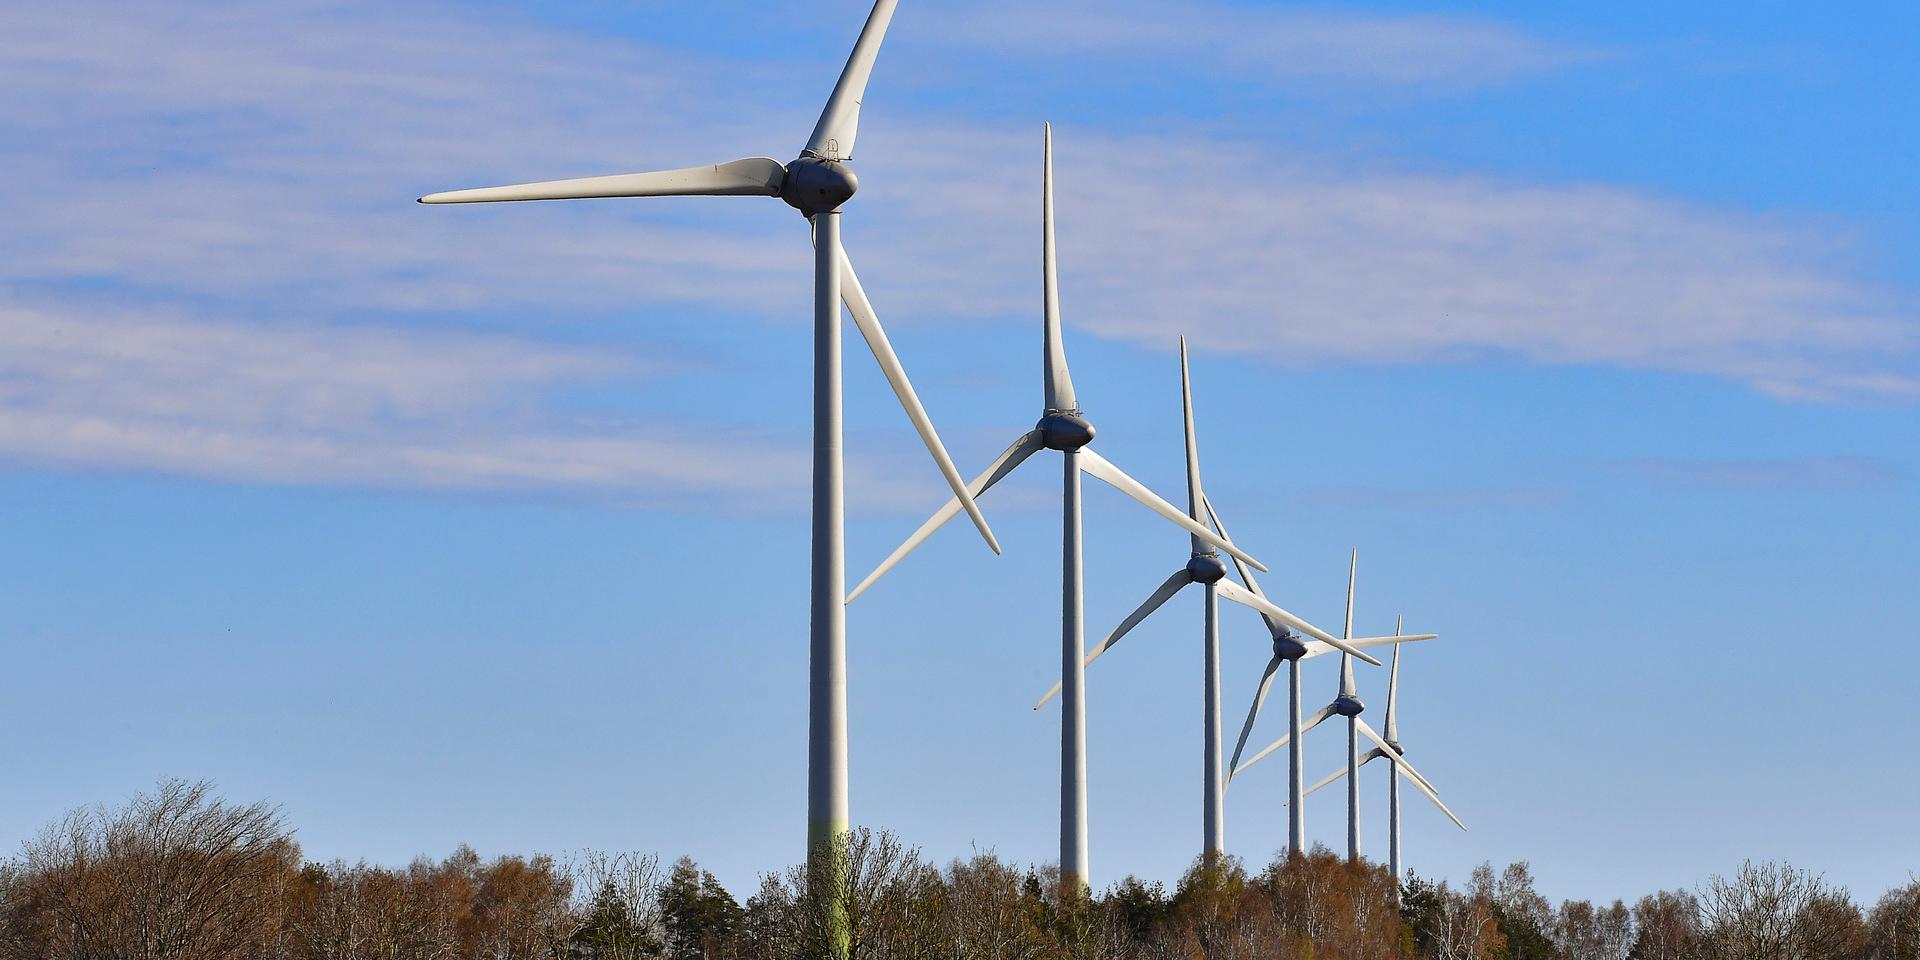 ”Ett avgörande hinder i utbyggnaden av elproduktion är att hälften av alla vindkraftverk stoppas av det kommunala vetot innan miljöprövningen – som utreder påverkan på djur, natur och människor – har inletts.”